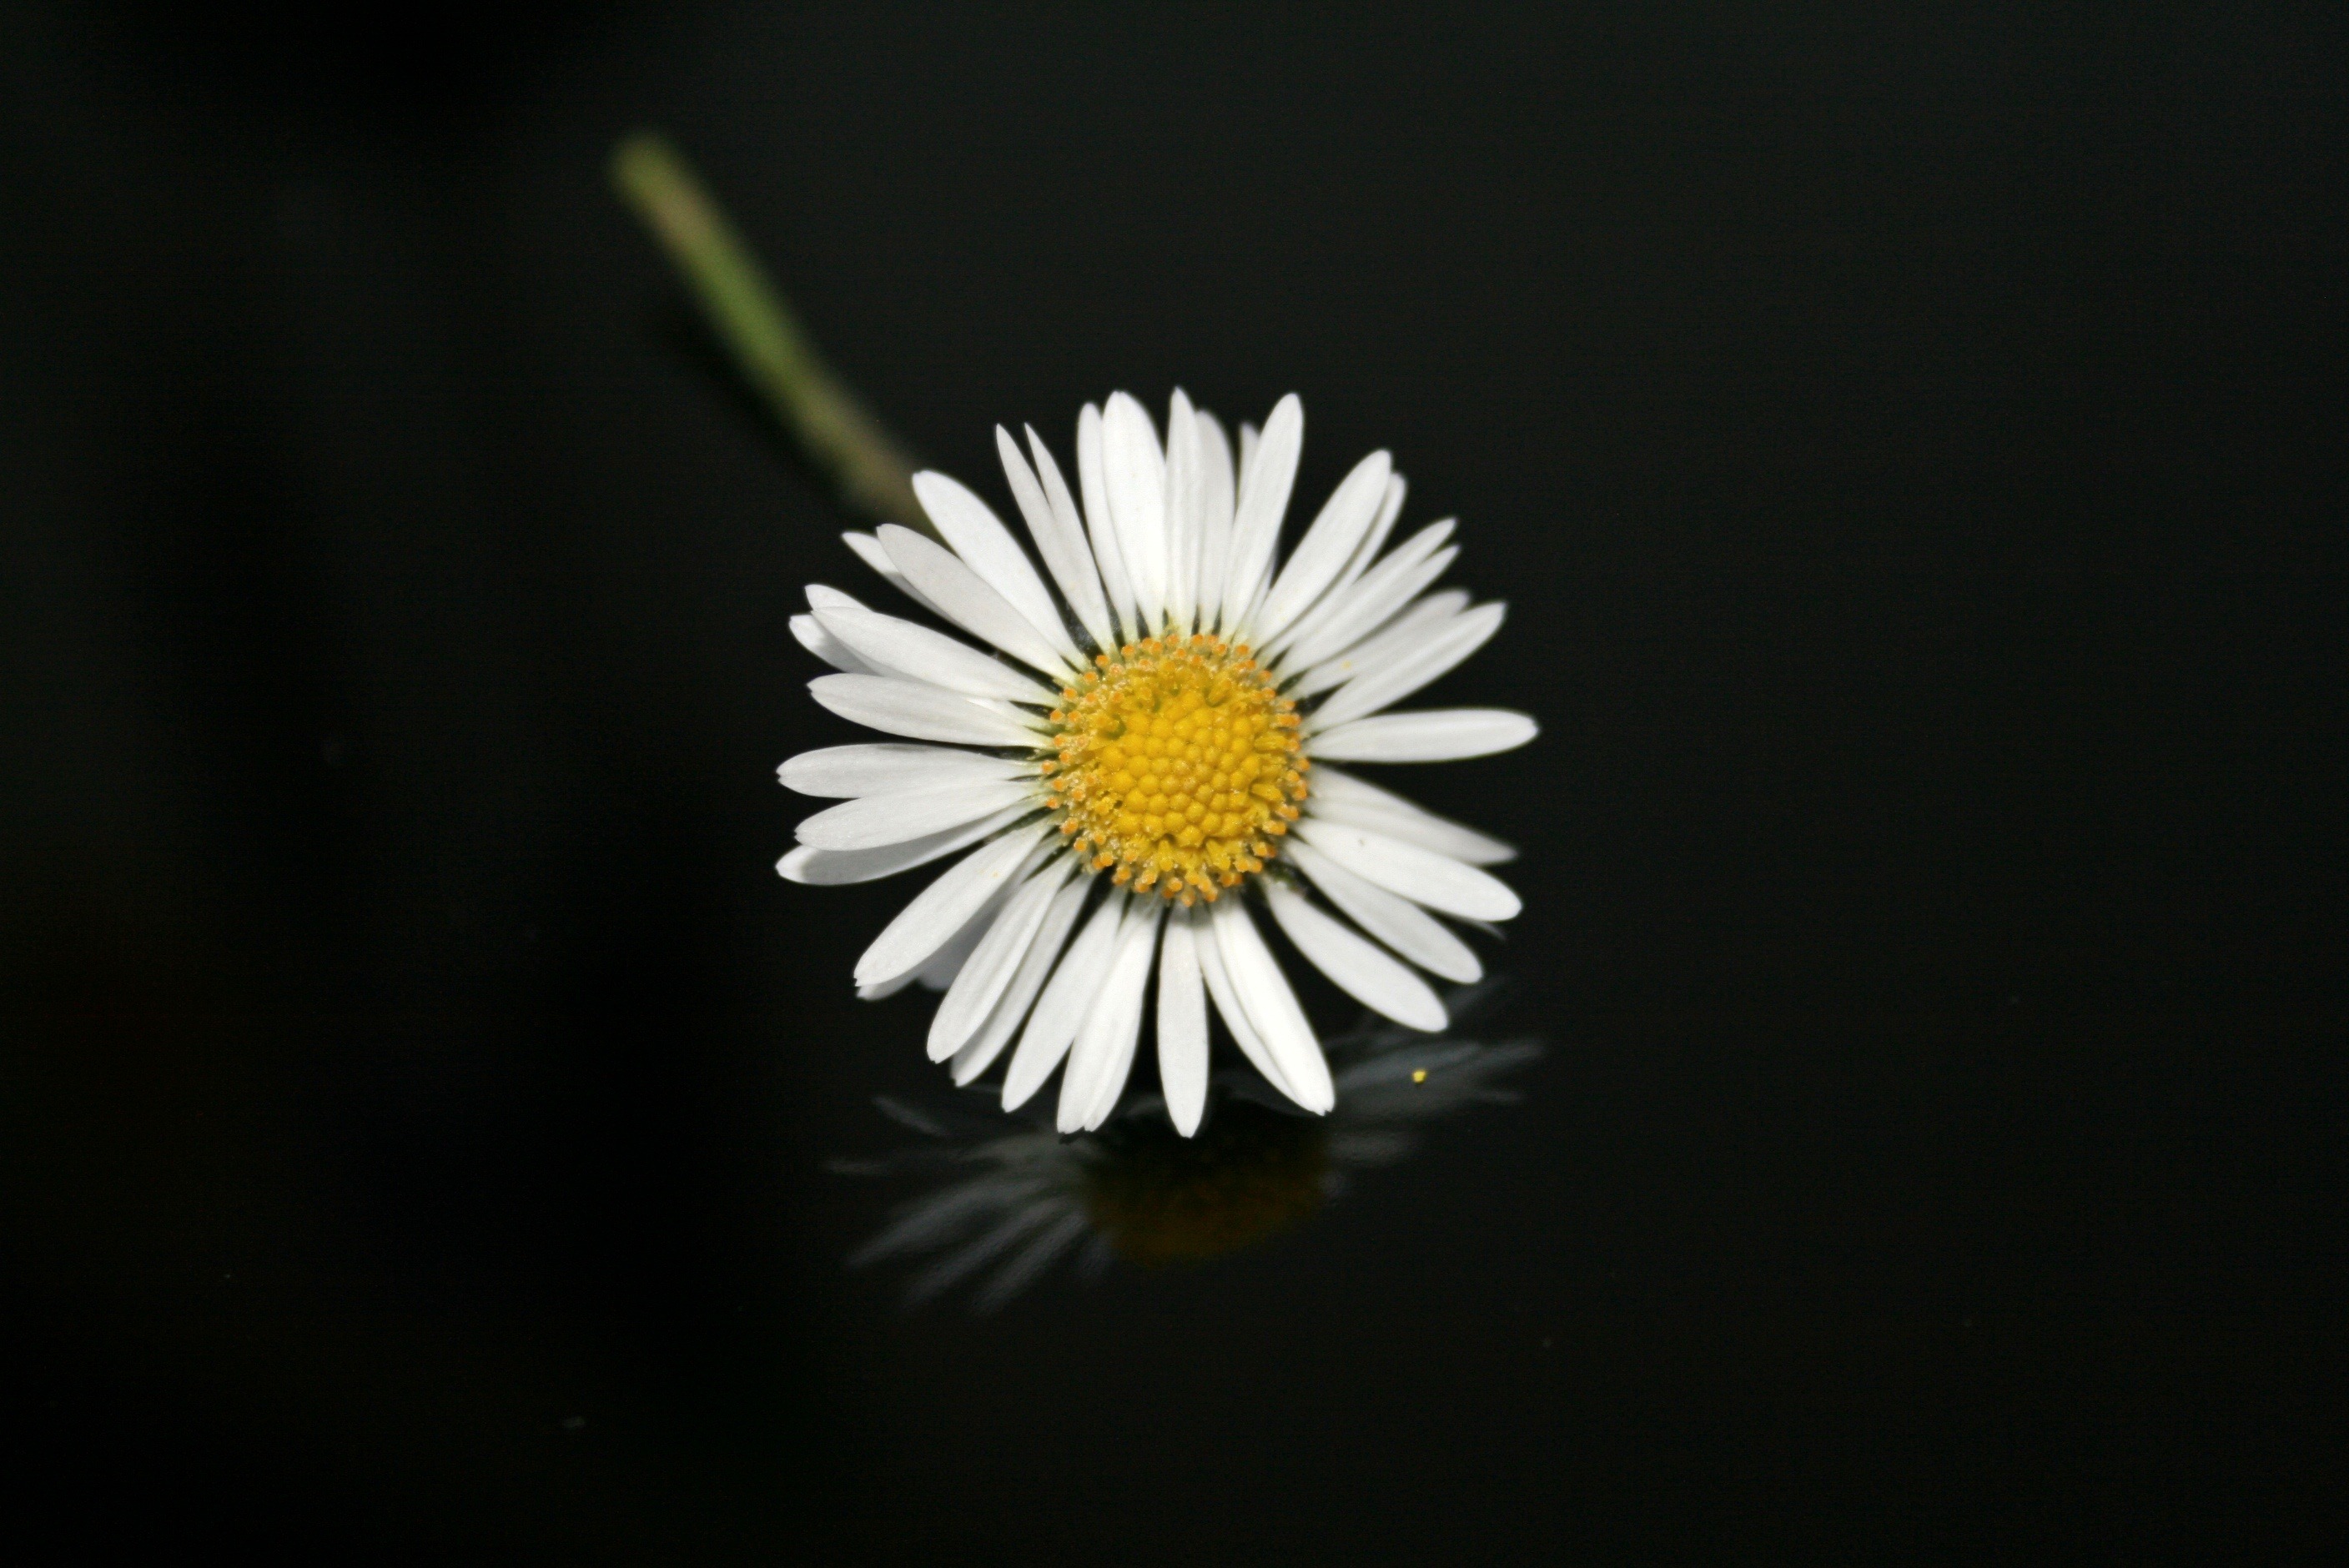 Hình ảnh hoa cúc trắng nền đen đẹp